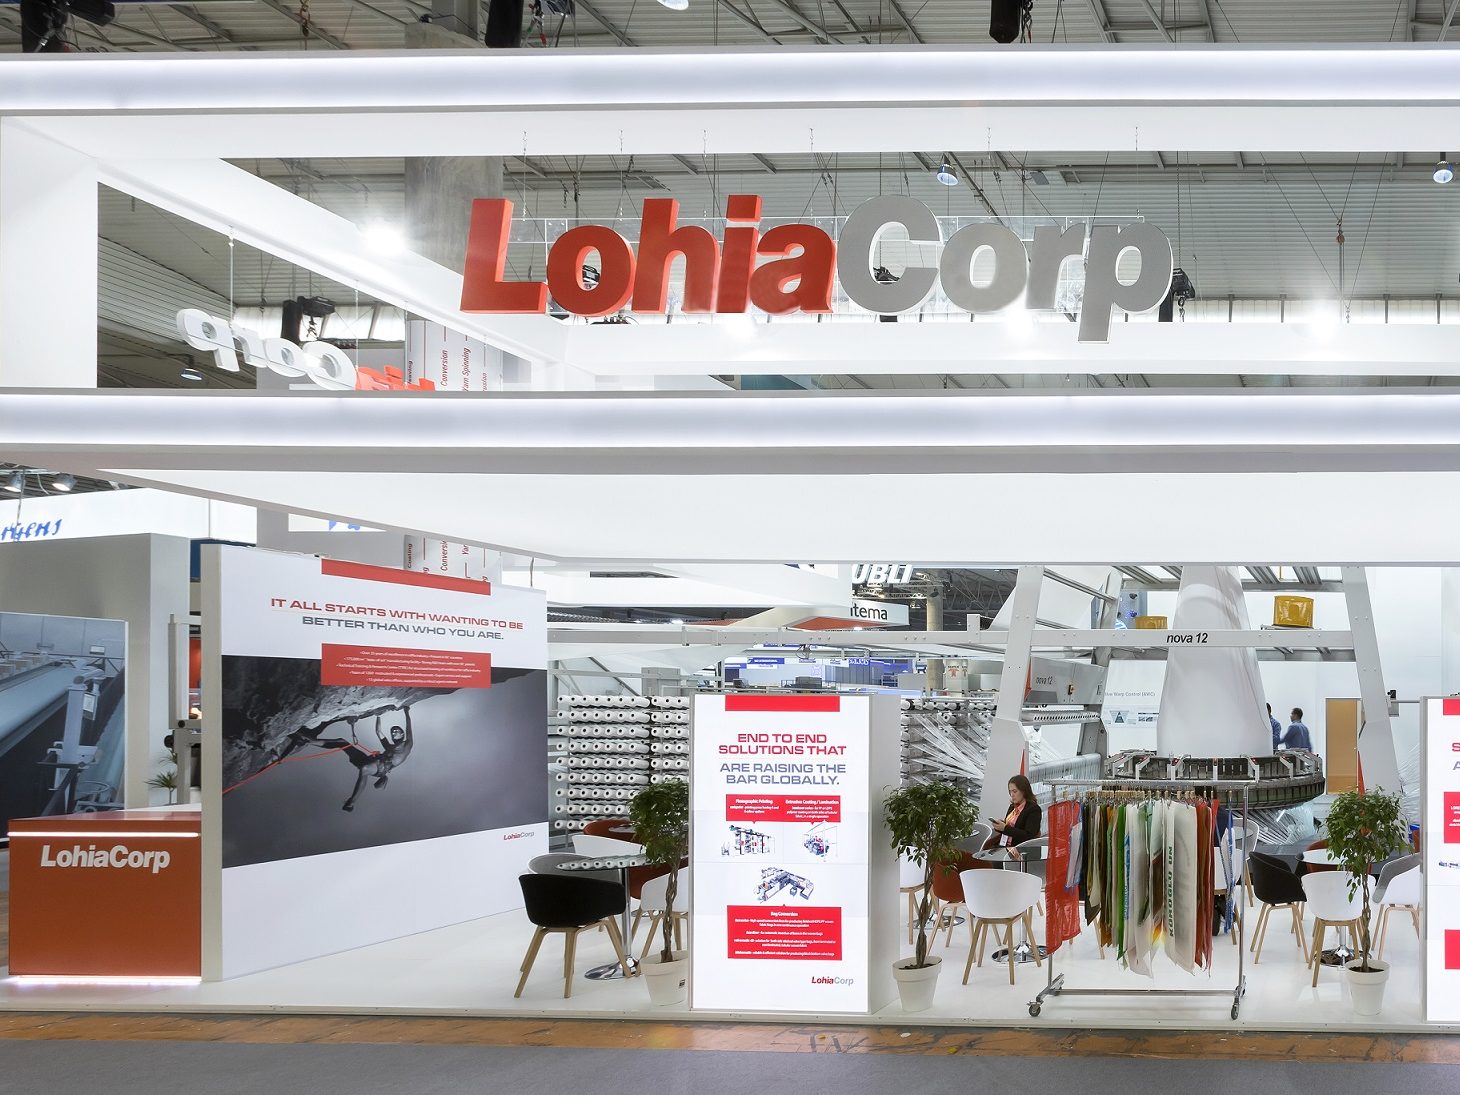 Lohia Corp